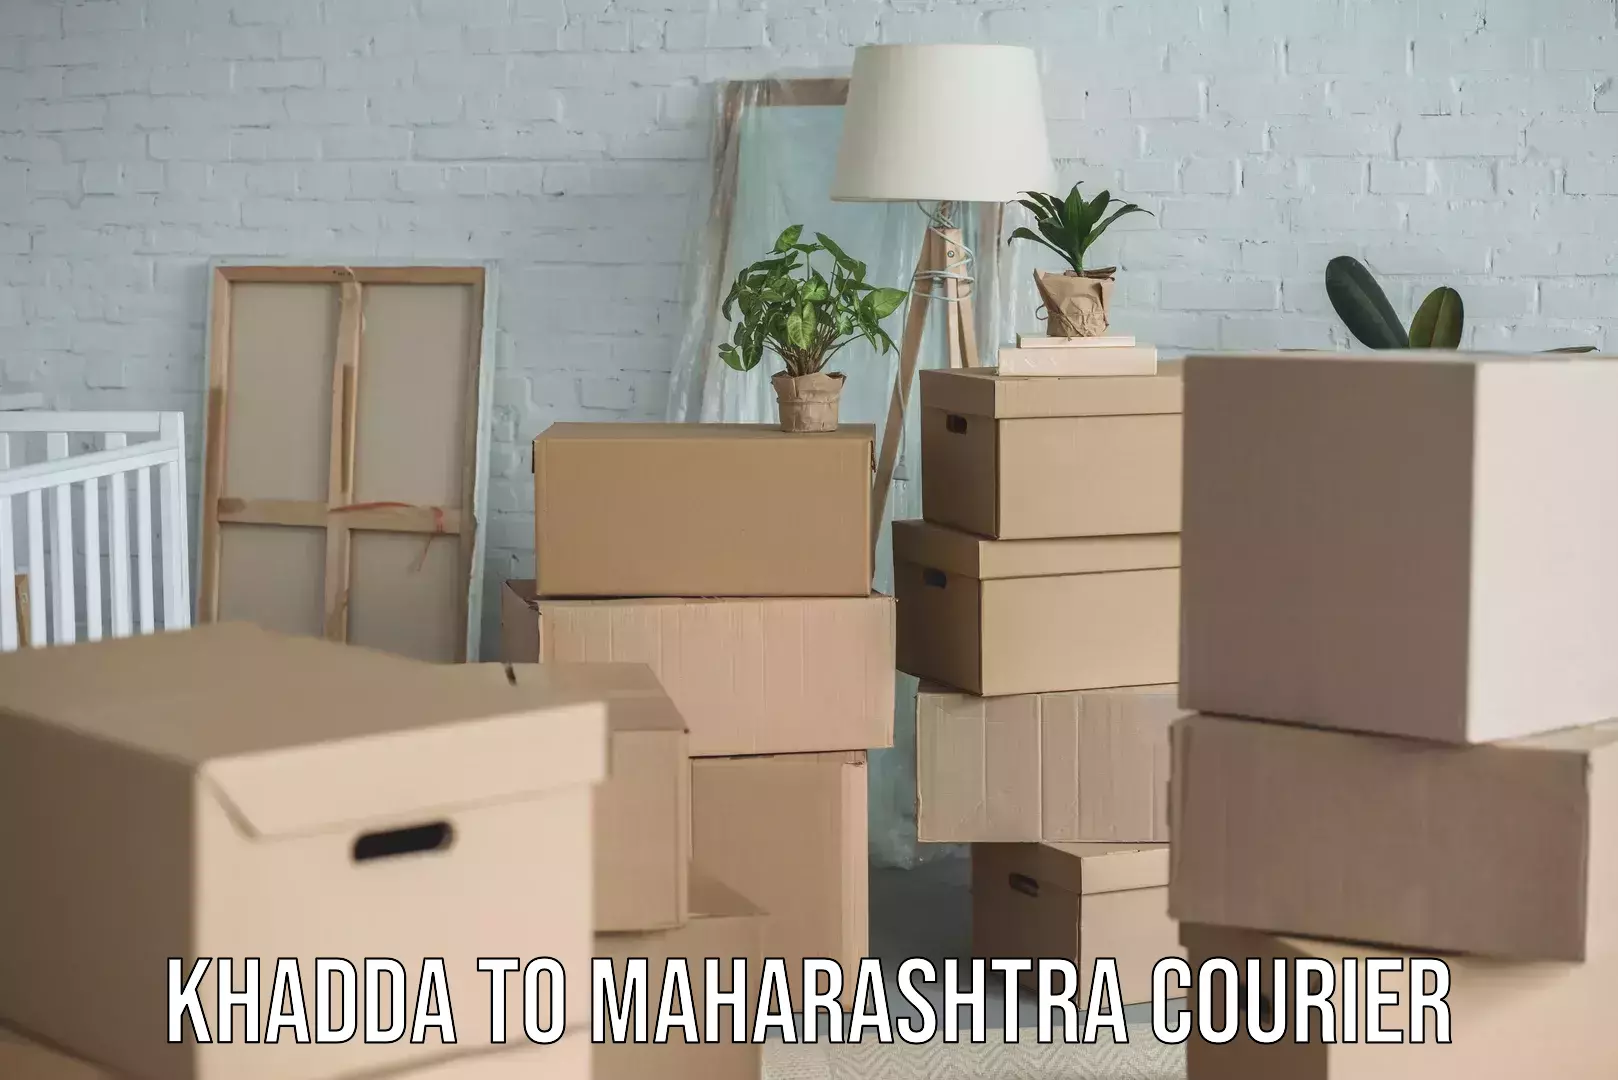 Furniture moving experts Khadda to Maharashtra